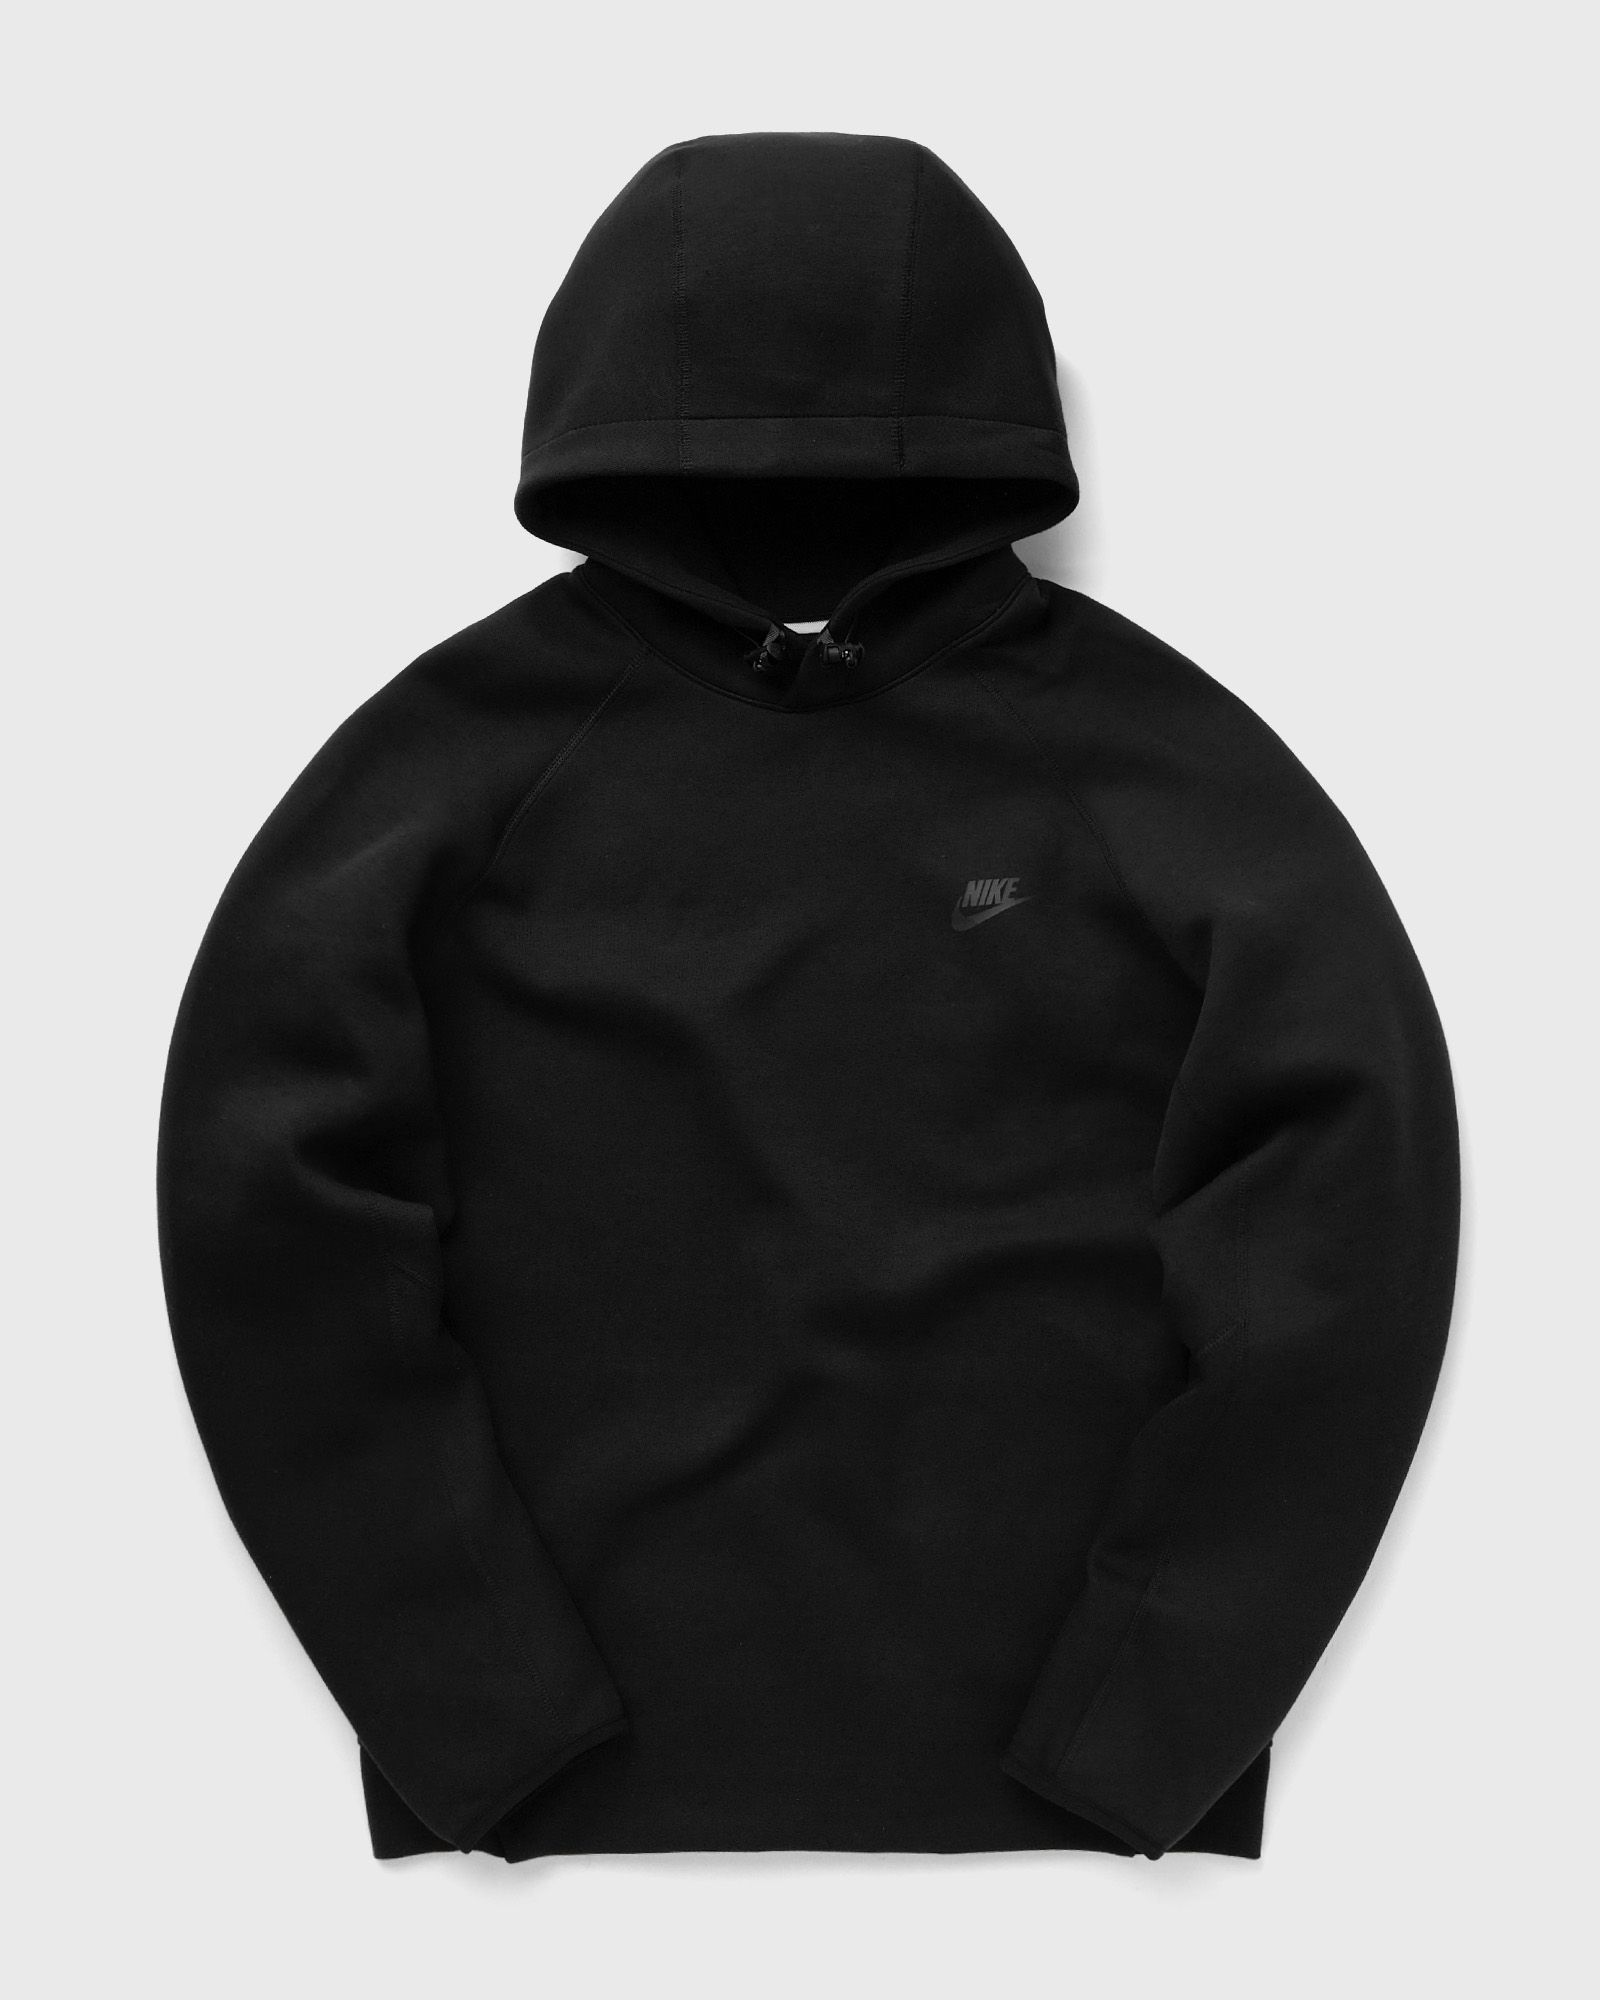 Nike - sportswear tech fleece pullover hoodie men hoodies black in größe:xxl